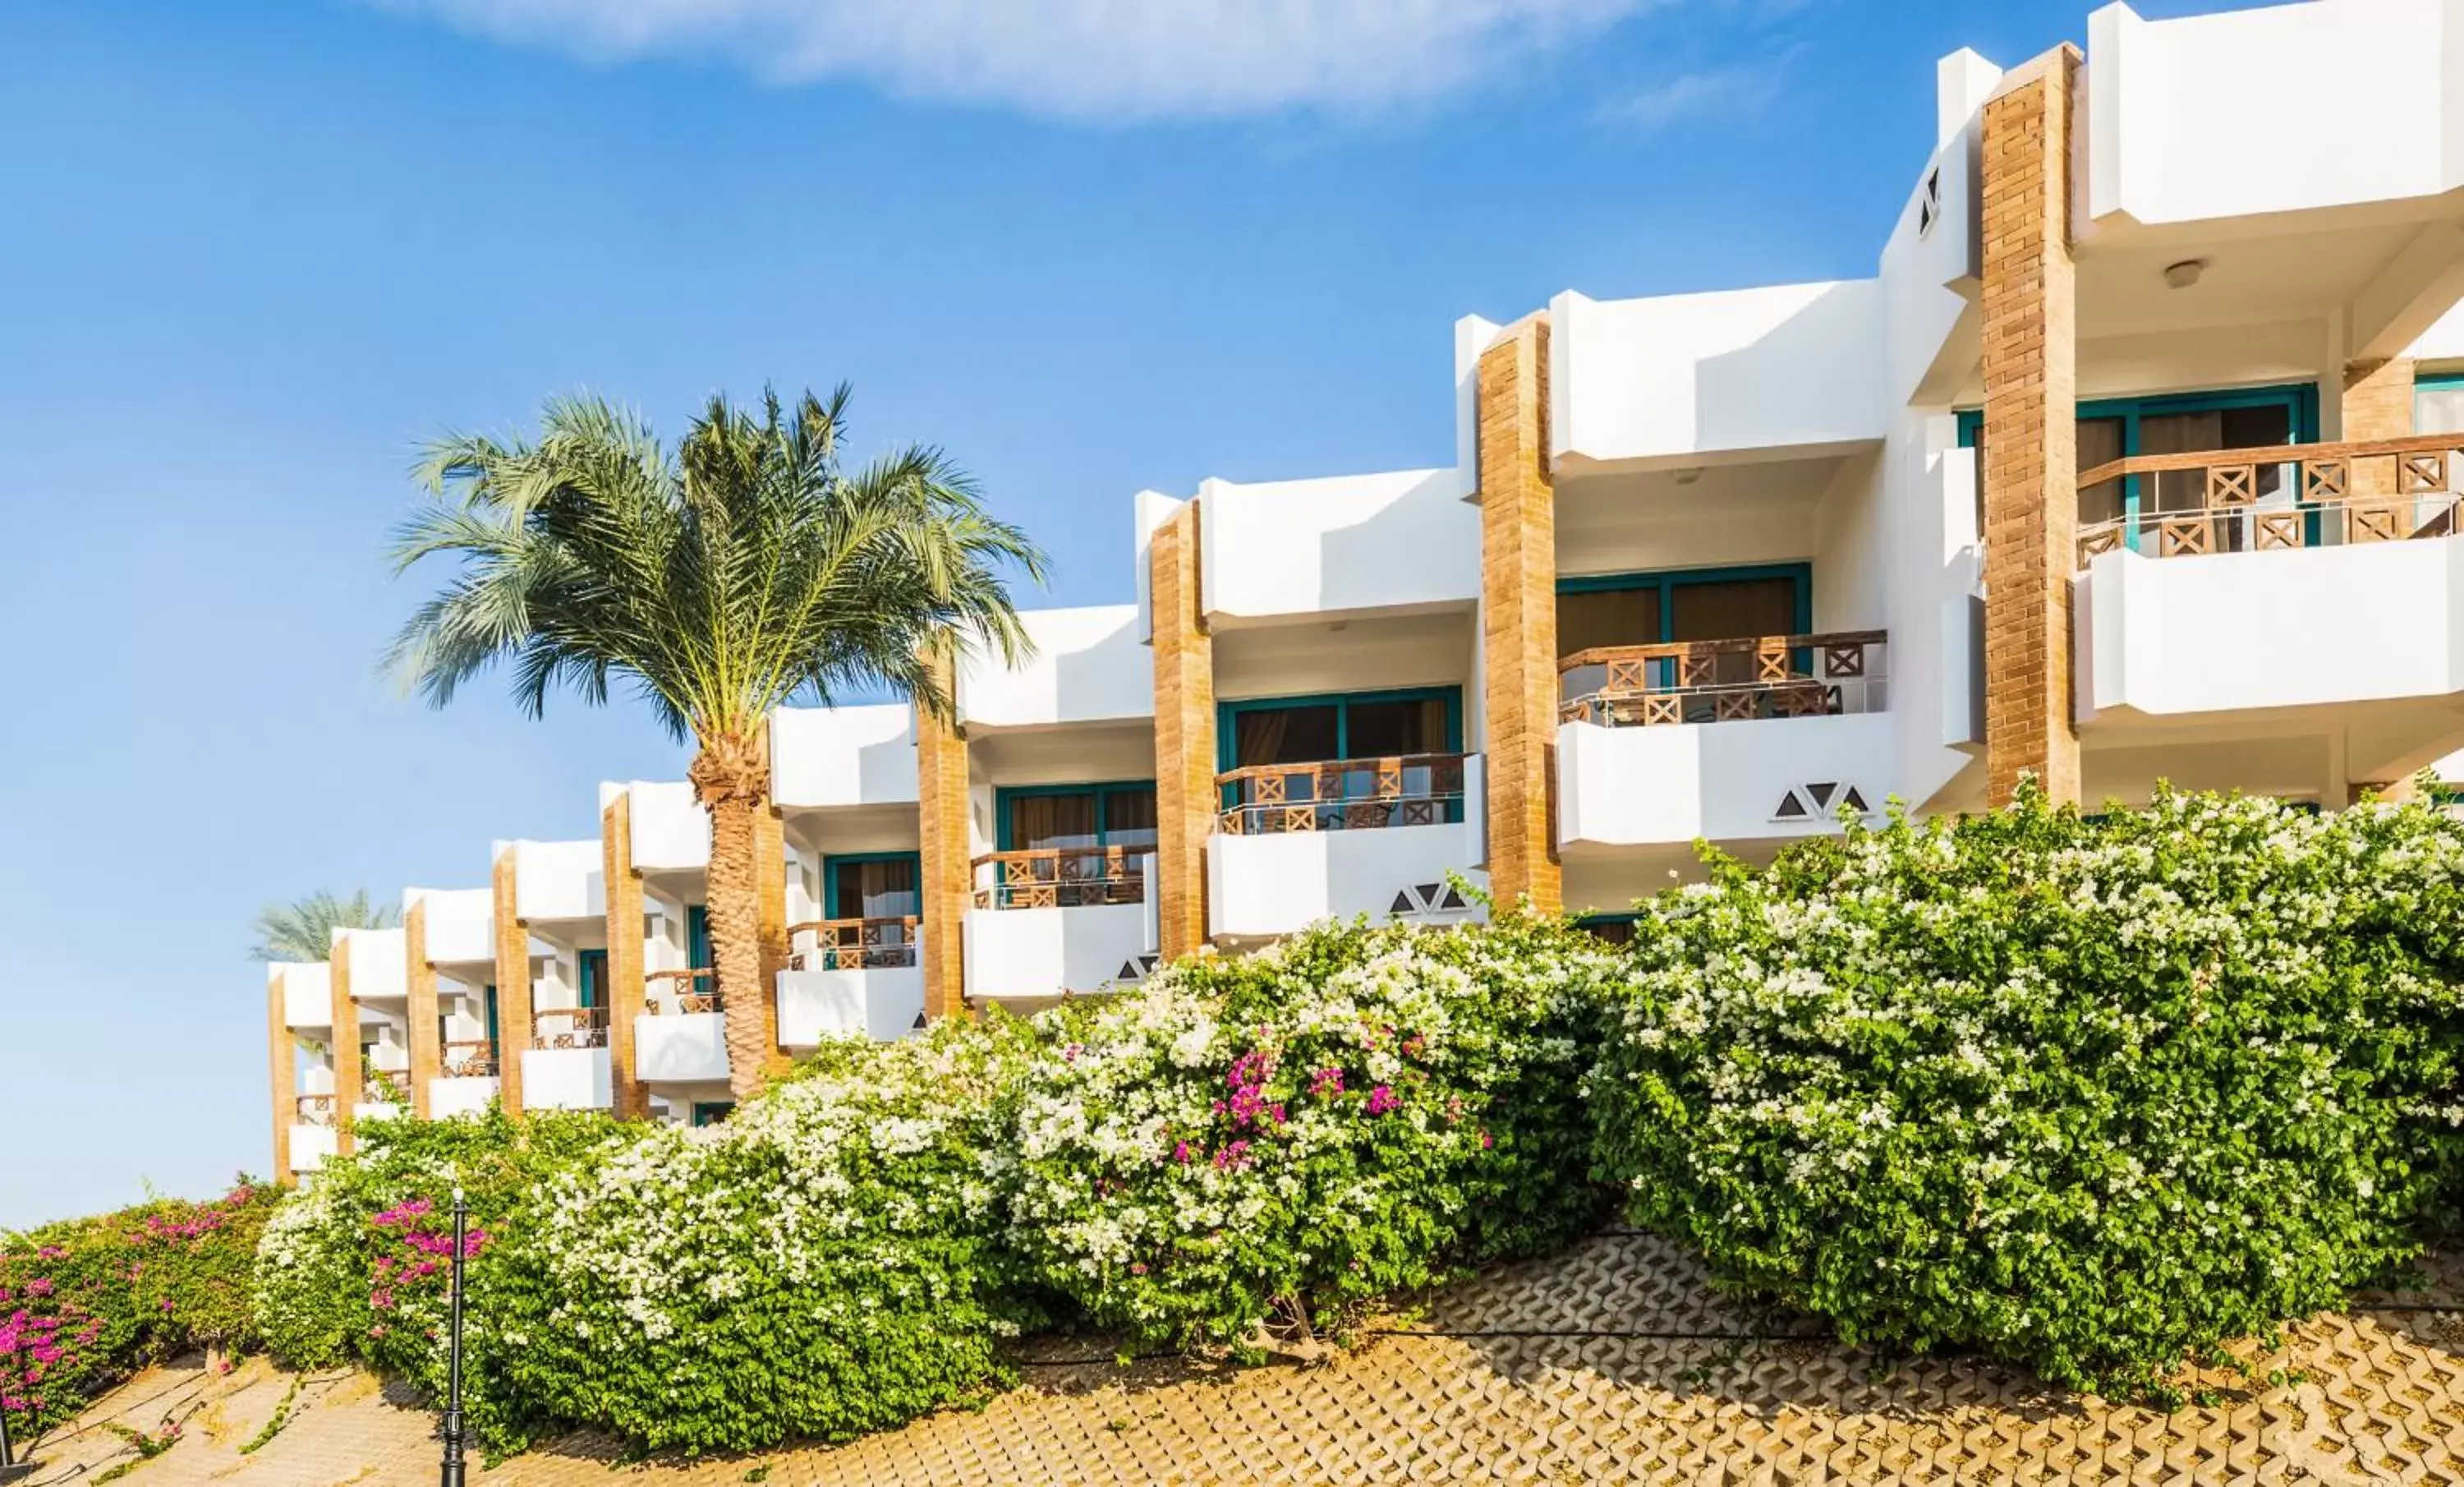 Garden view, Property Building in Pyramisa Beach Resort Sharm El Sheikh